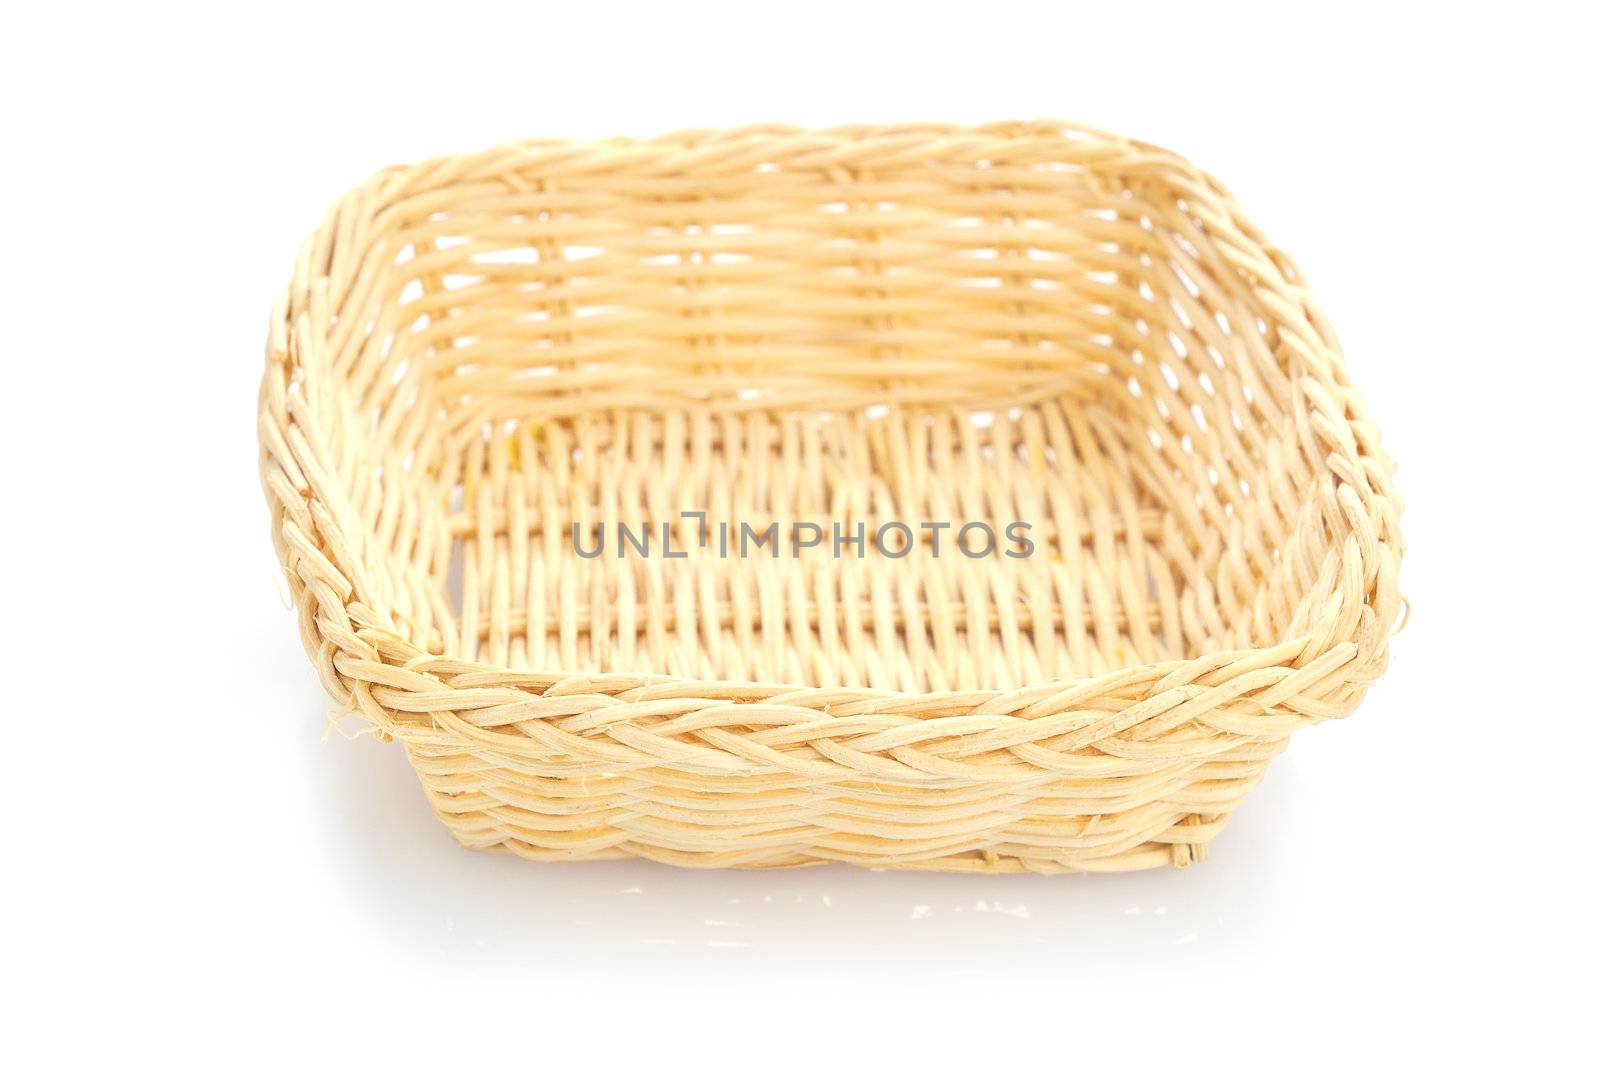 Empty wooden fruit or bread basket